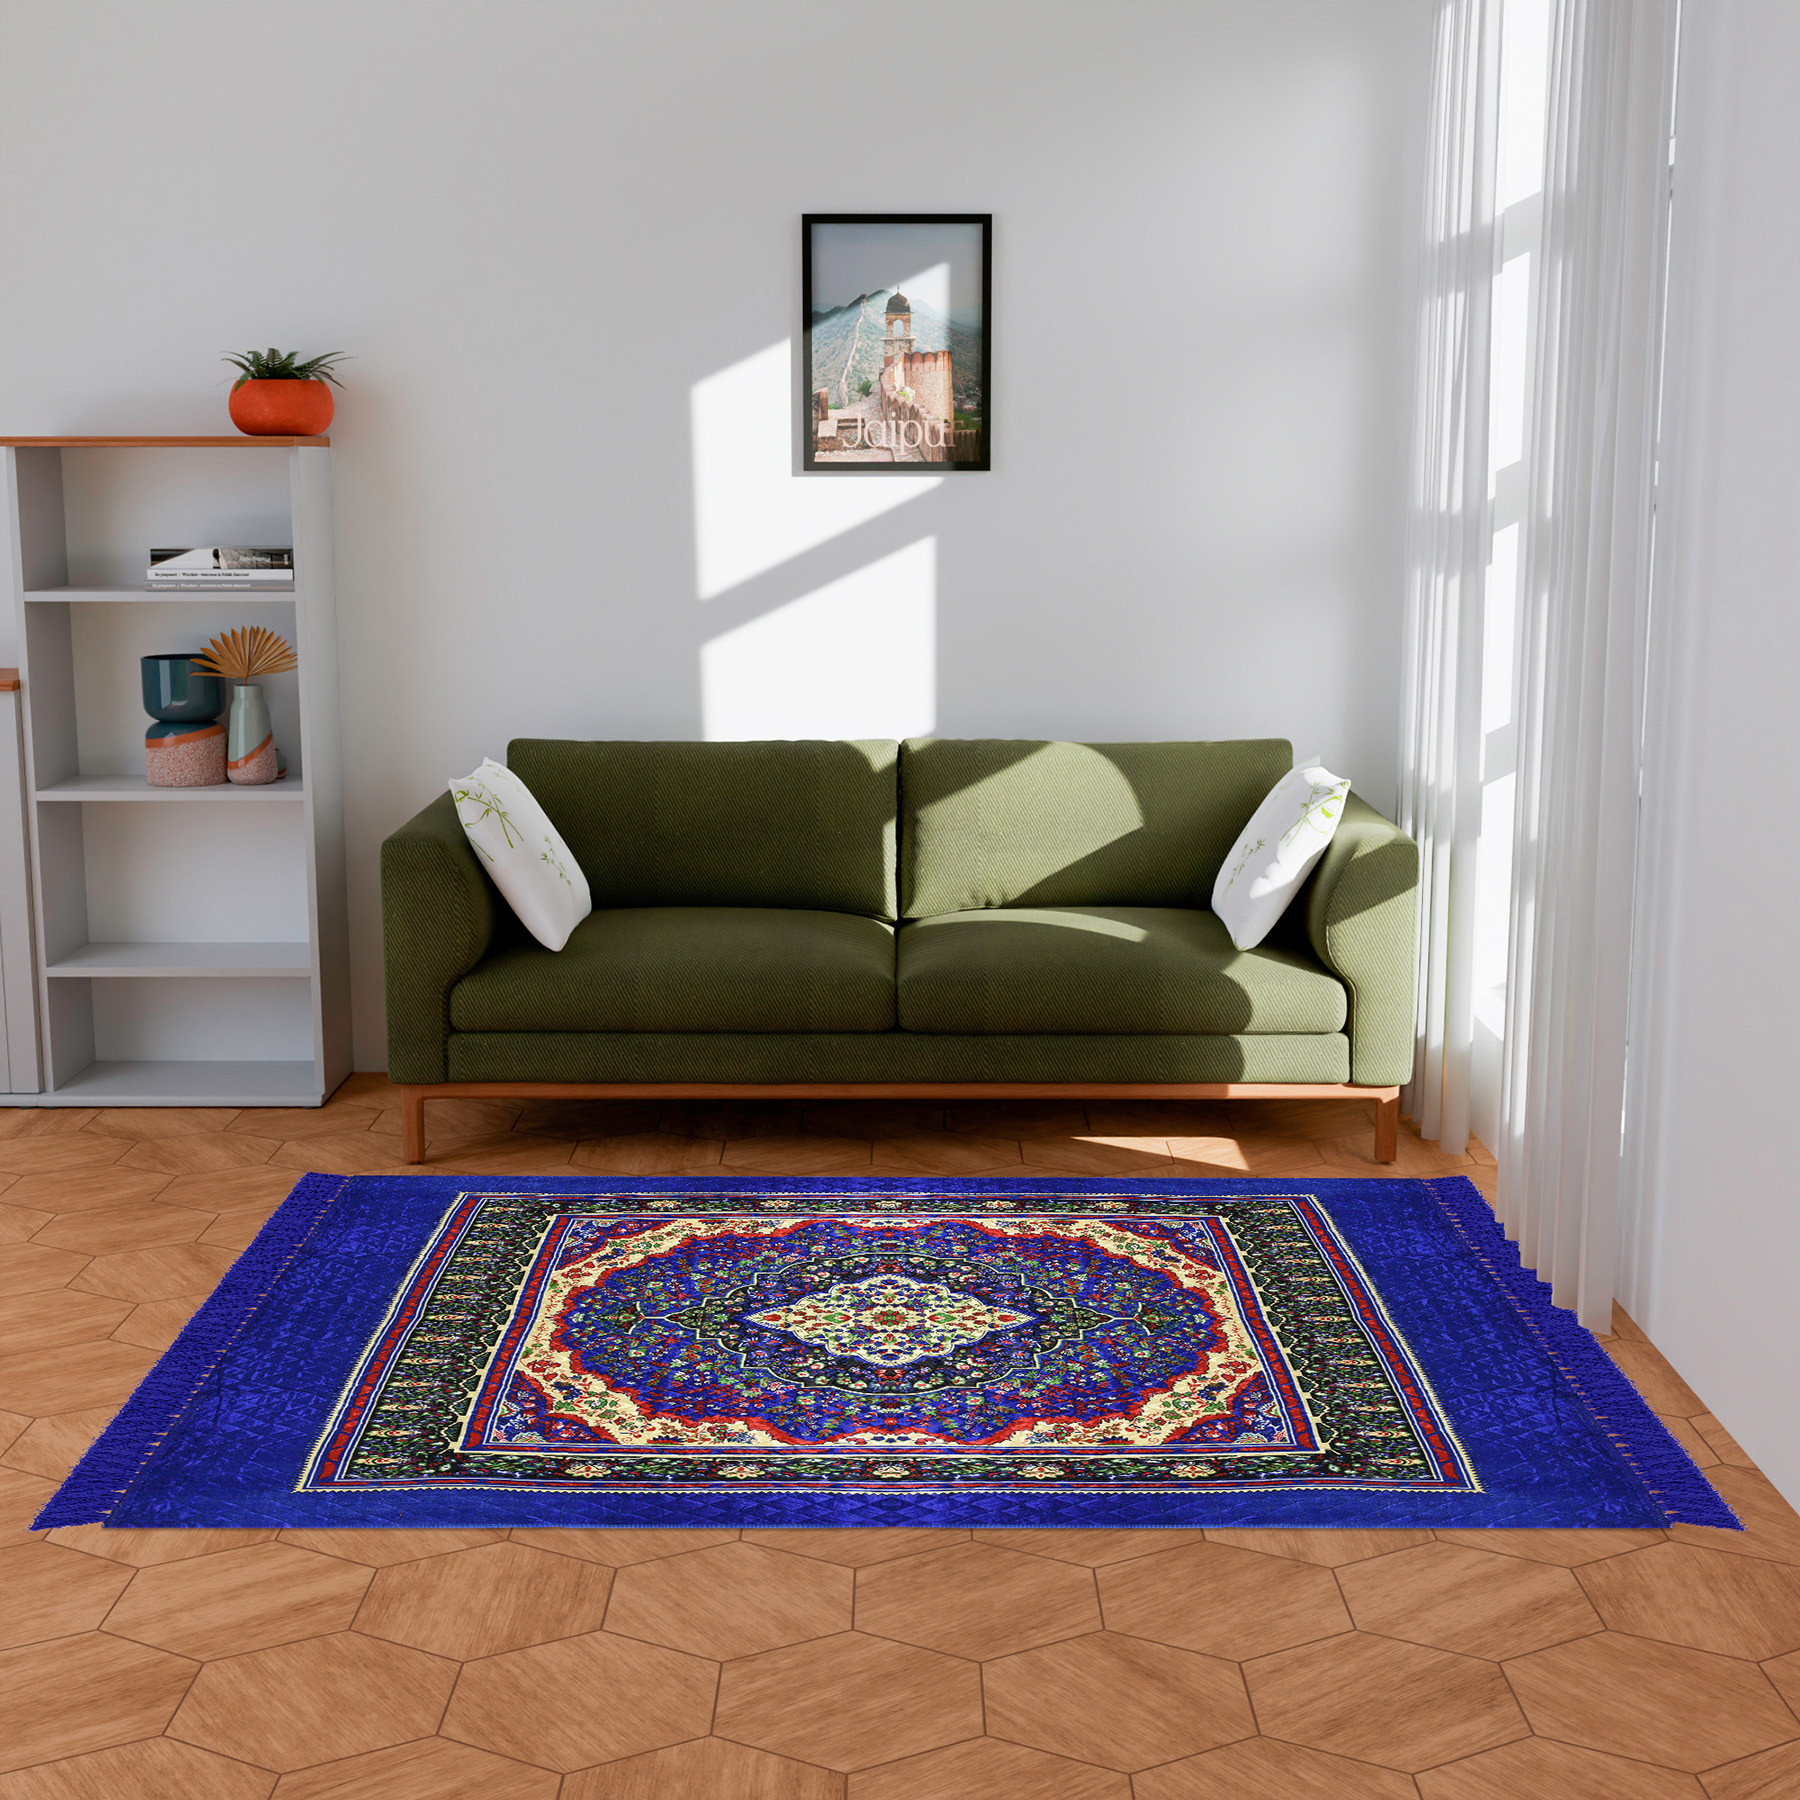 Kuber Industries Carpet | Velvet Carpet-Rug for Home Décor | Carpet Rug for Bedroom | Printed Carpet for Living Room | Prayer-Yoga Mat | Carpet for Hall | 6.5x7.5 Ft | Blue